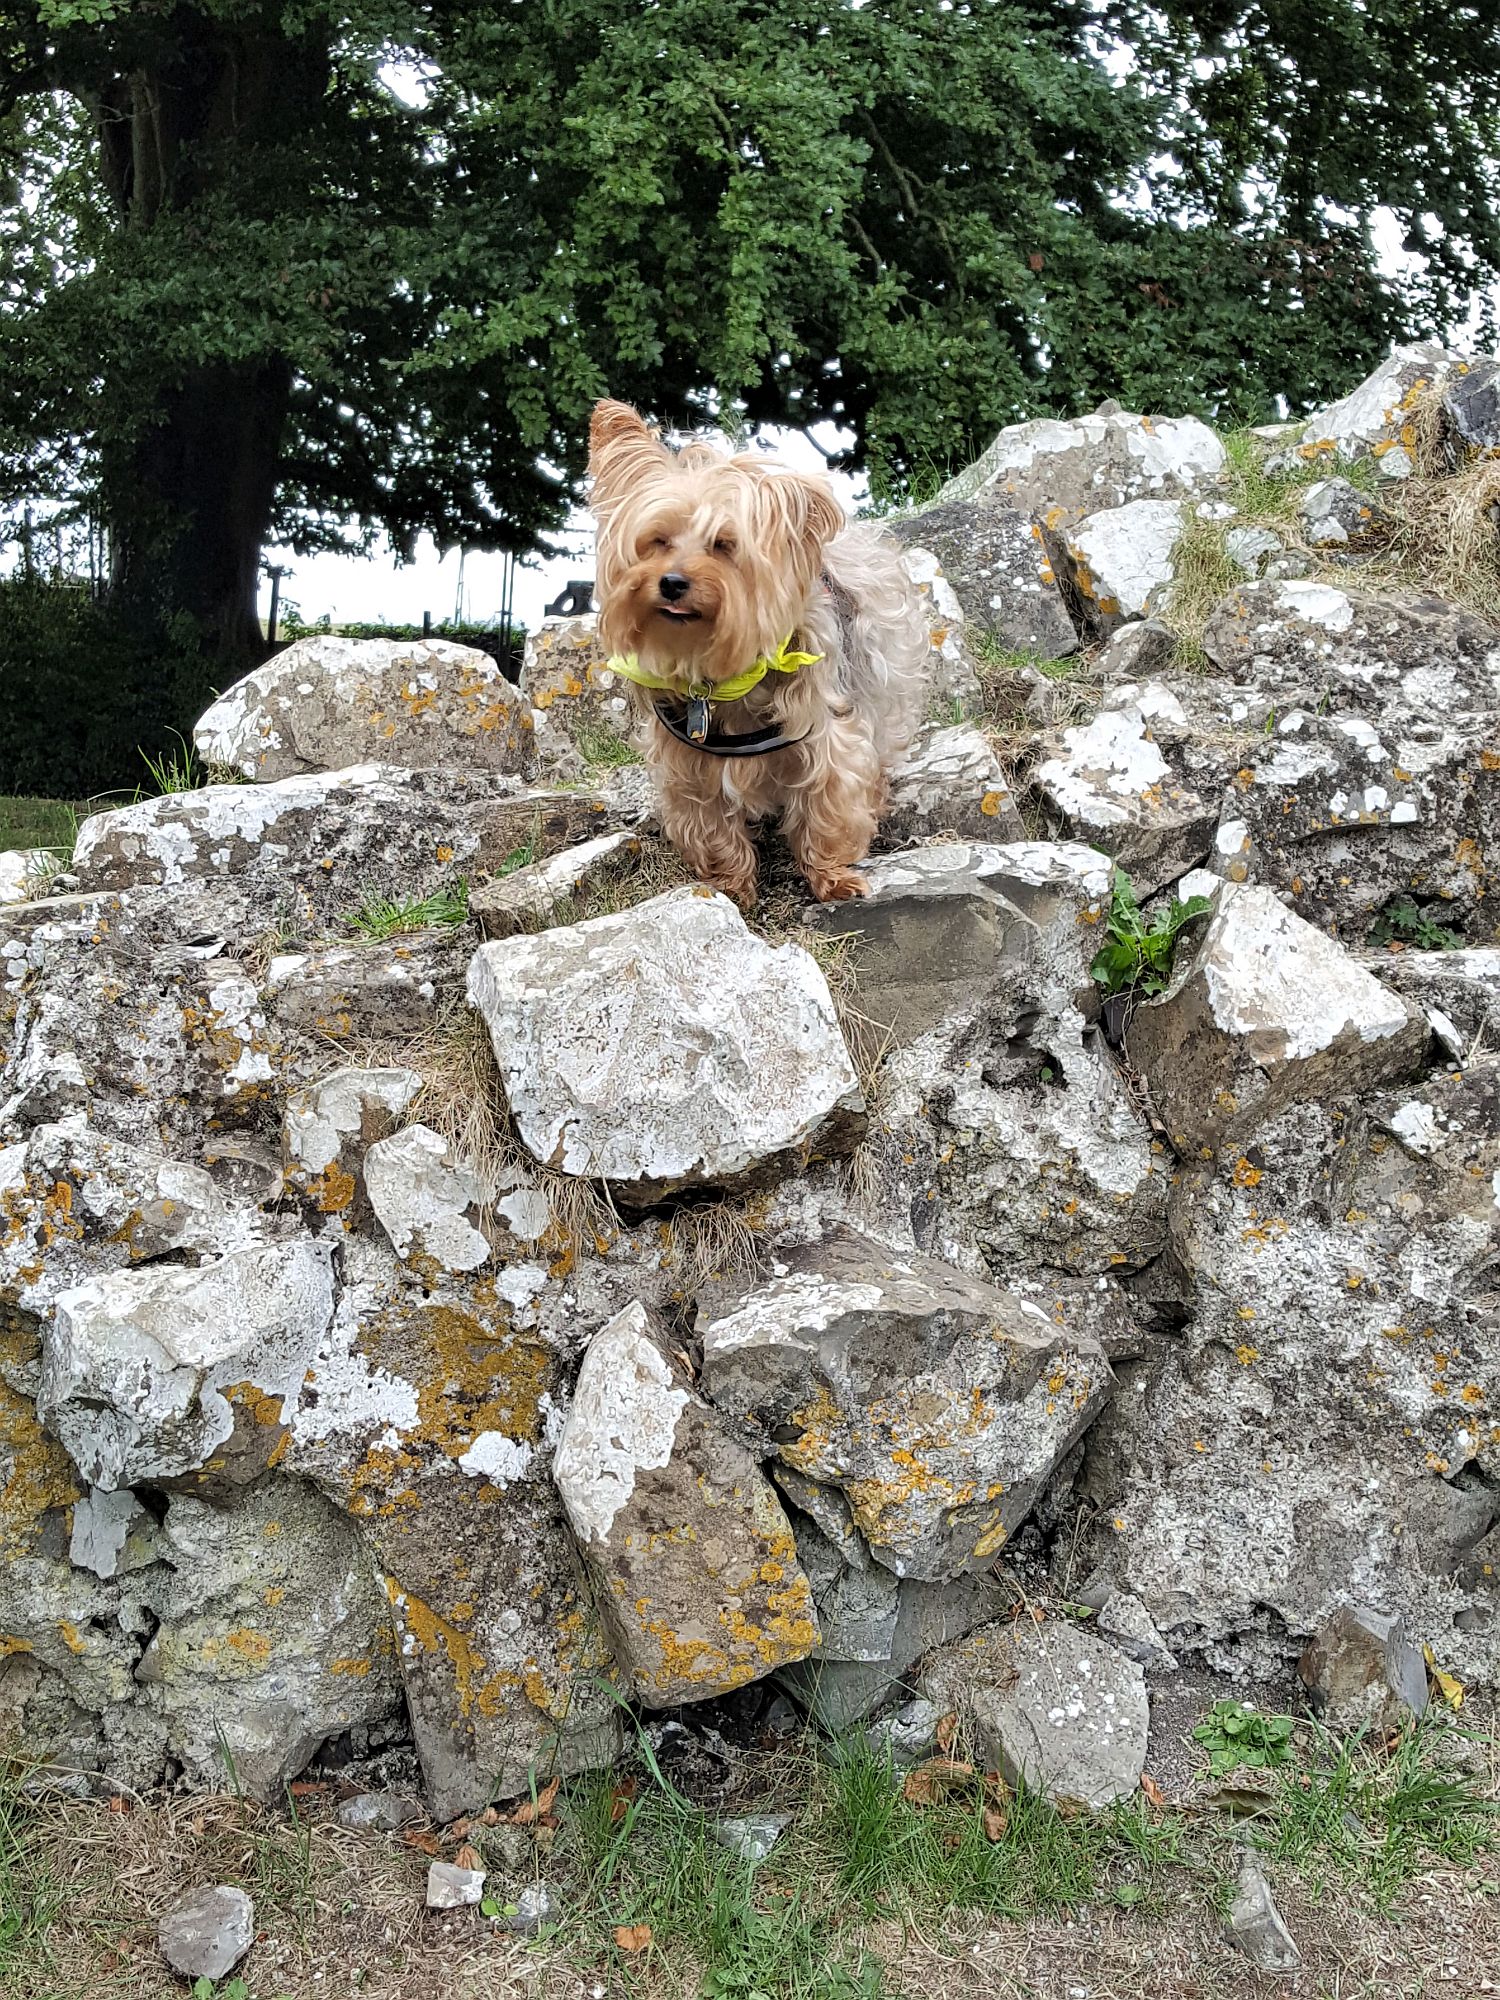 Little dog climbing rocks in Tara, Ireland